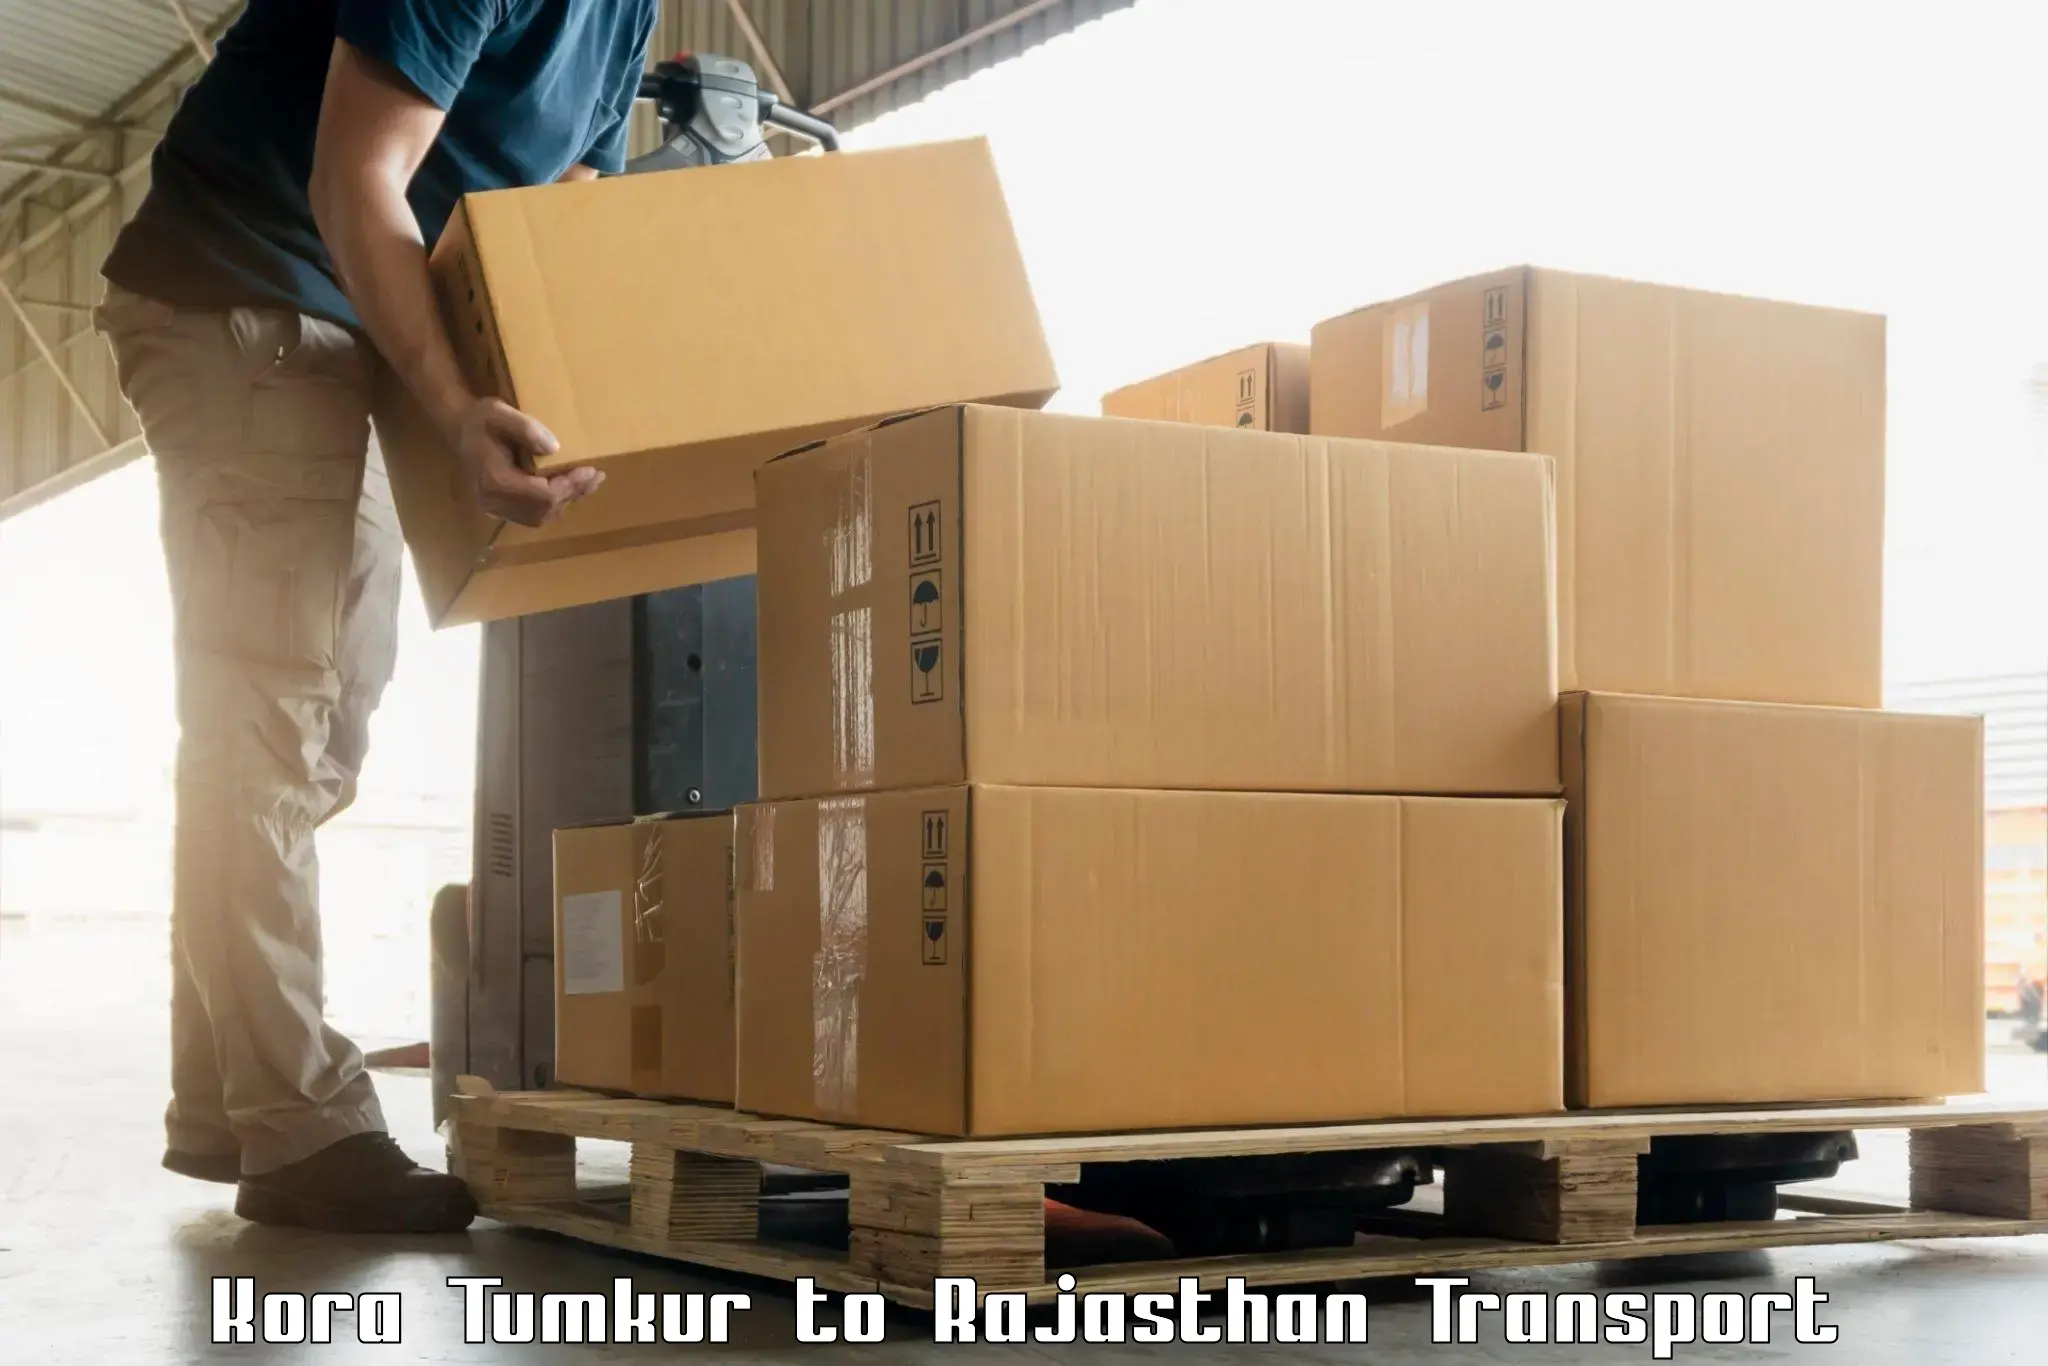 Furniture transport service Kora Tumkur to Pali